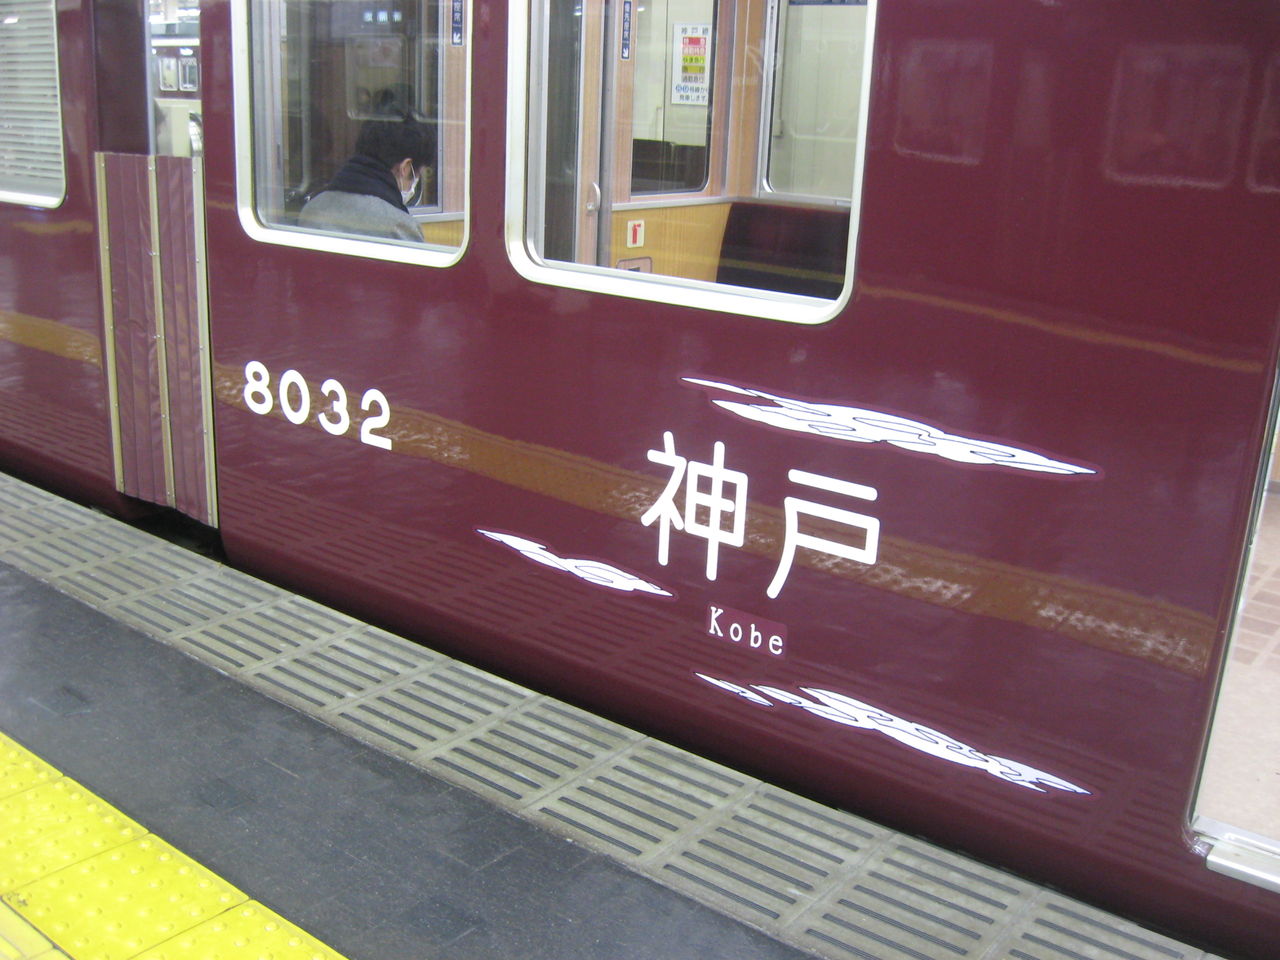 阪急電鉄の観光スポットラッピング電車 わたせせいぞうさんと古都 そしてリラックマ電車再び Ske48とエアバスa380超絶推し男のblog